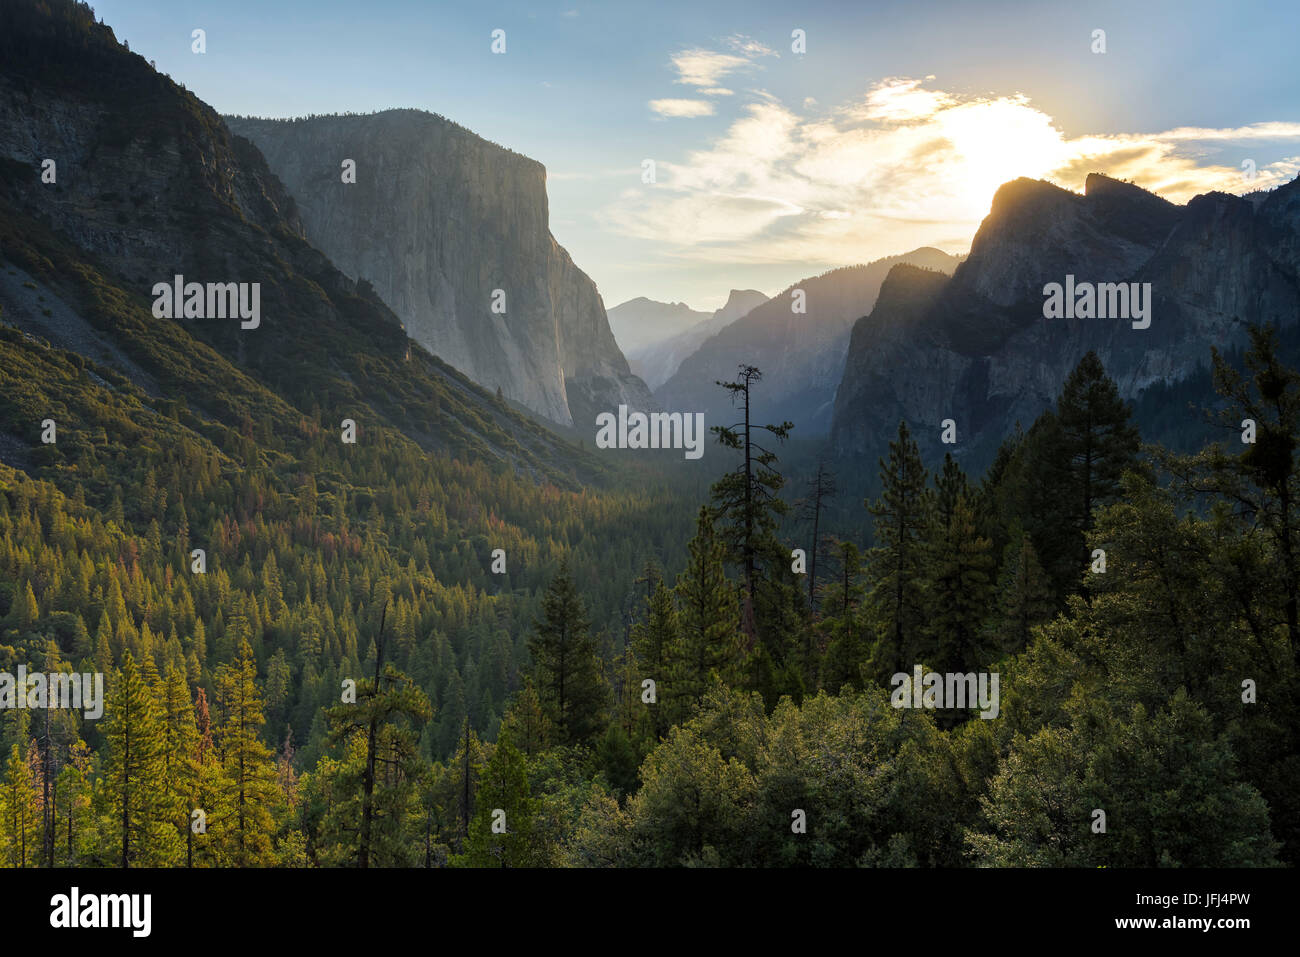 Vista en el valle de Yosemite, California, Estados Unidos Foto de stock